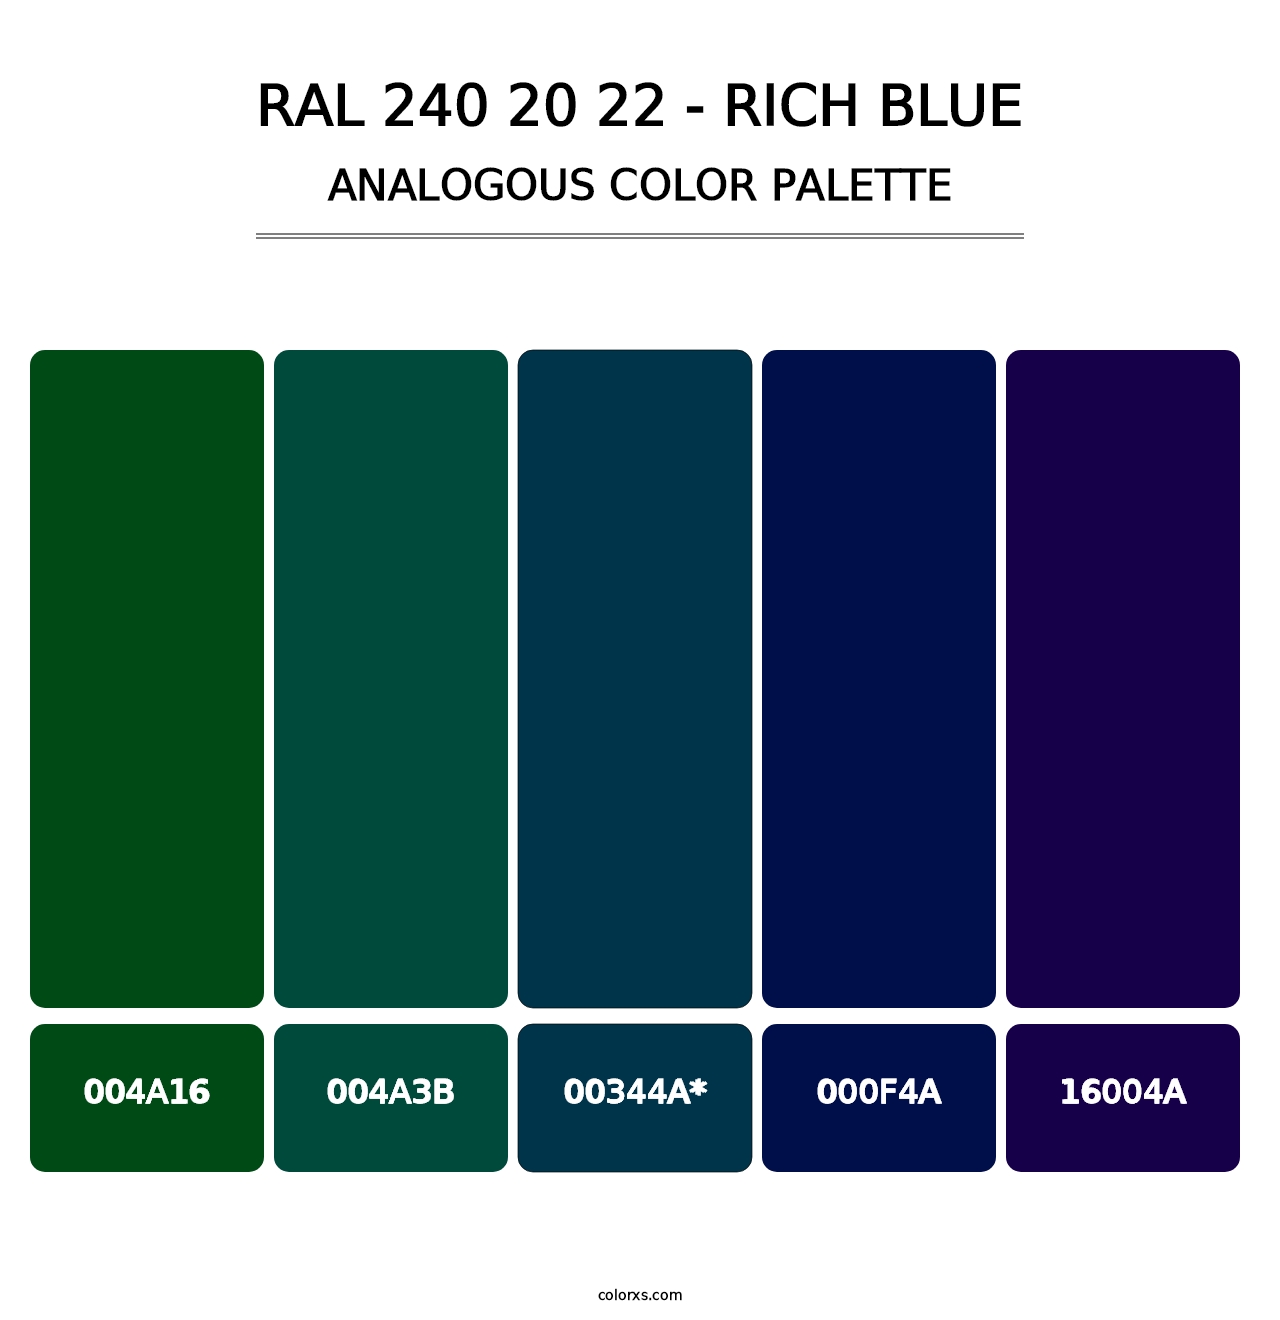 RAL 240 20 22 - Rich Blue - Analogous Color Palette